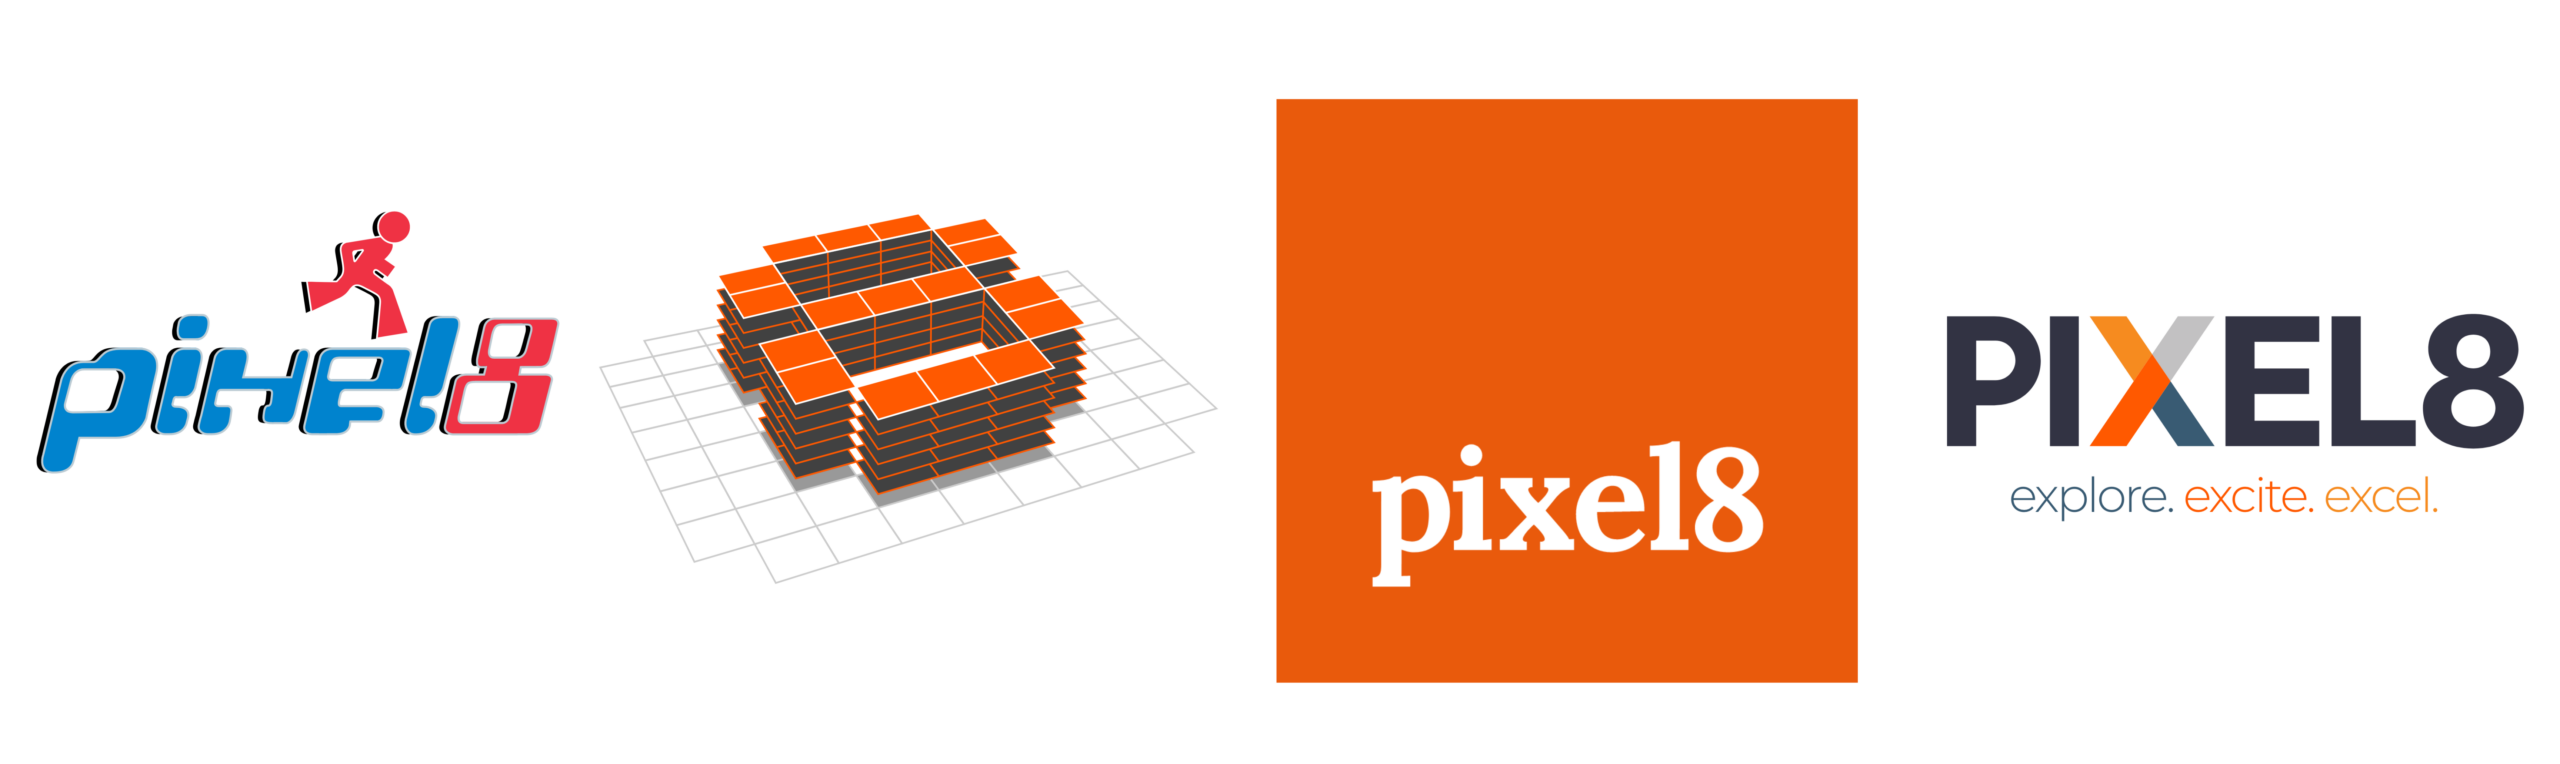 pixel8 logos